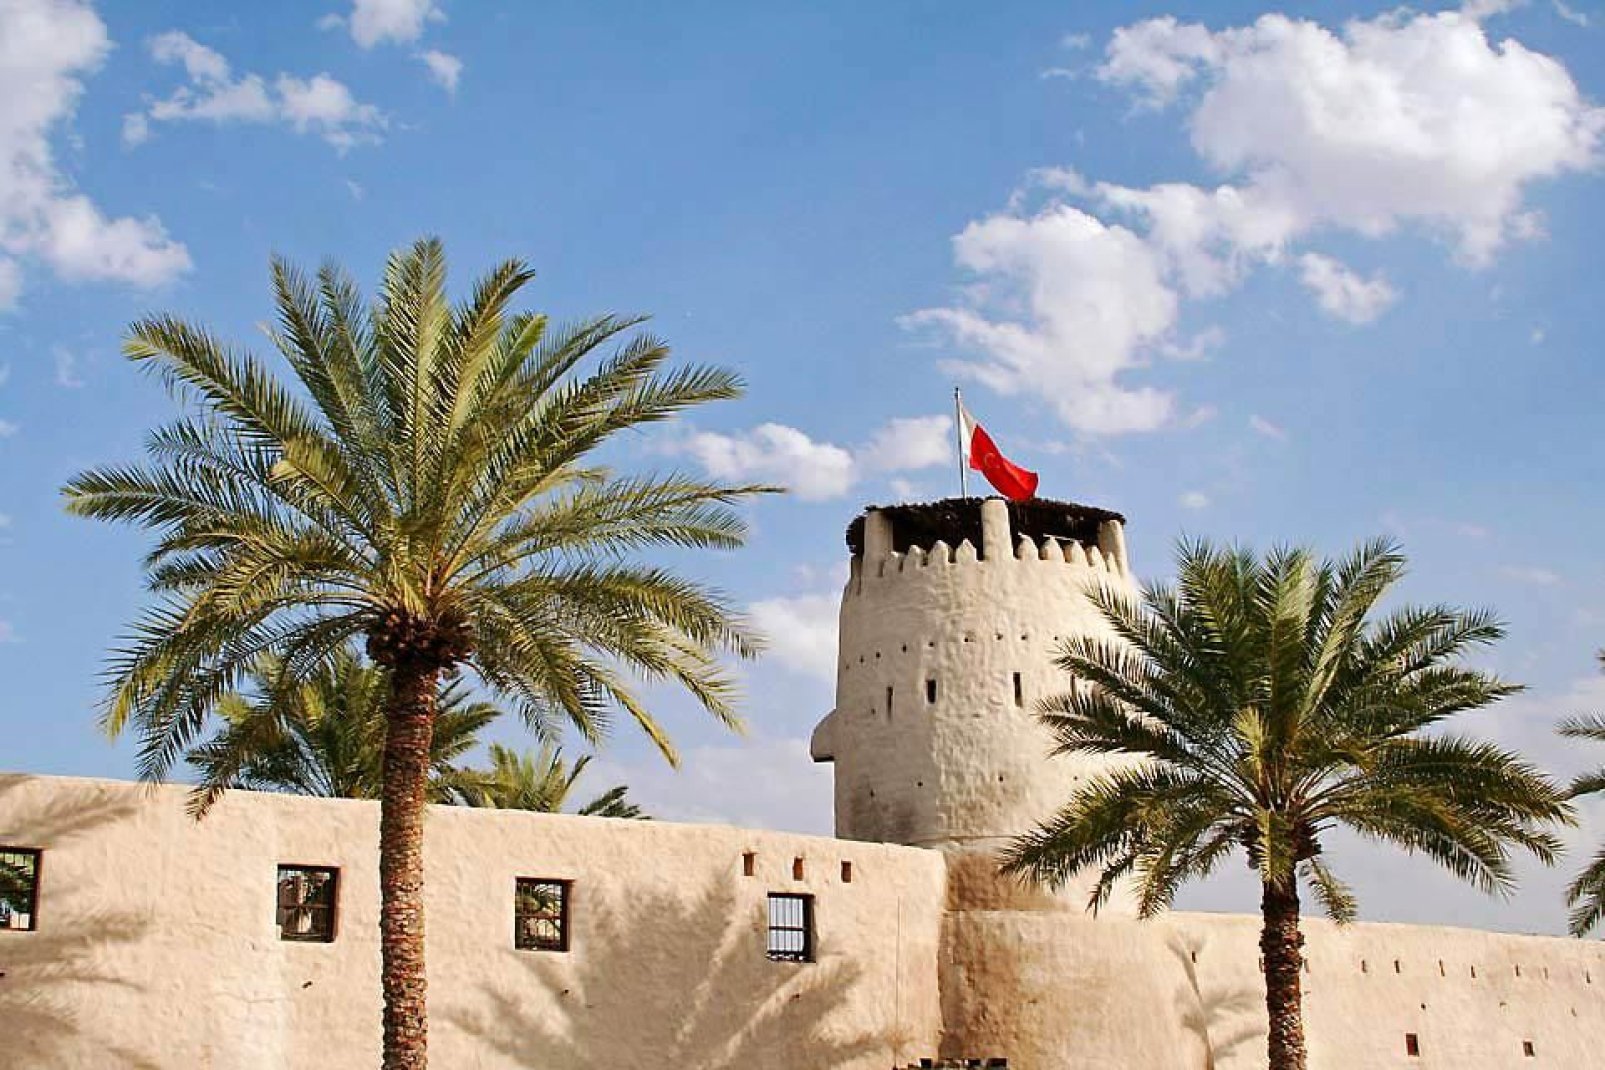 El fuerte, hoy transformado en museo, es una de las principales atracciones de la ciudad.